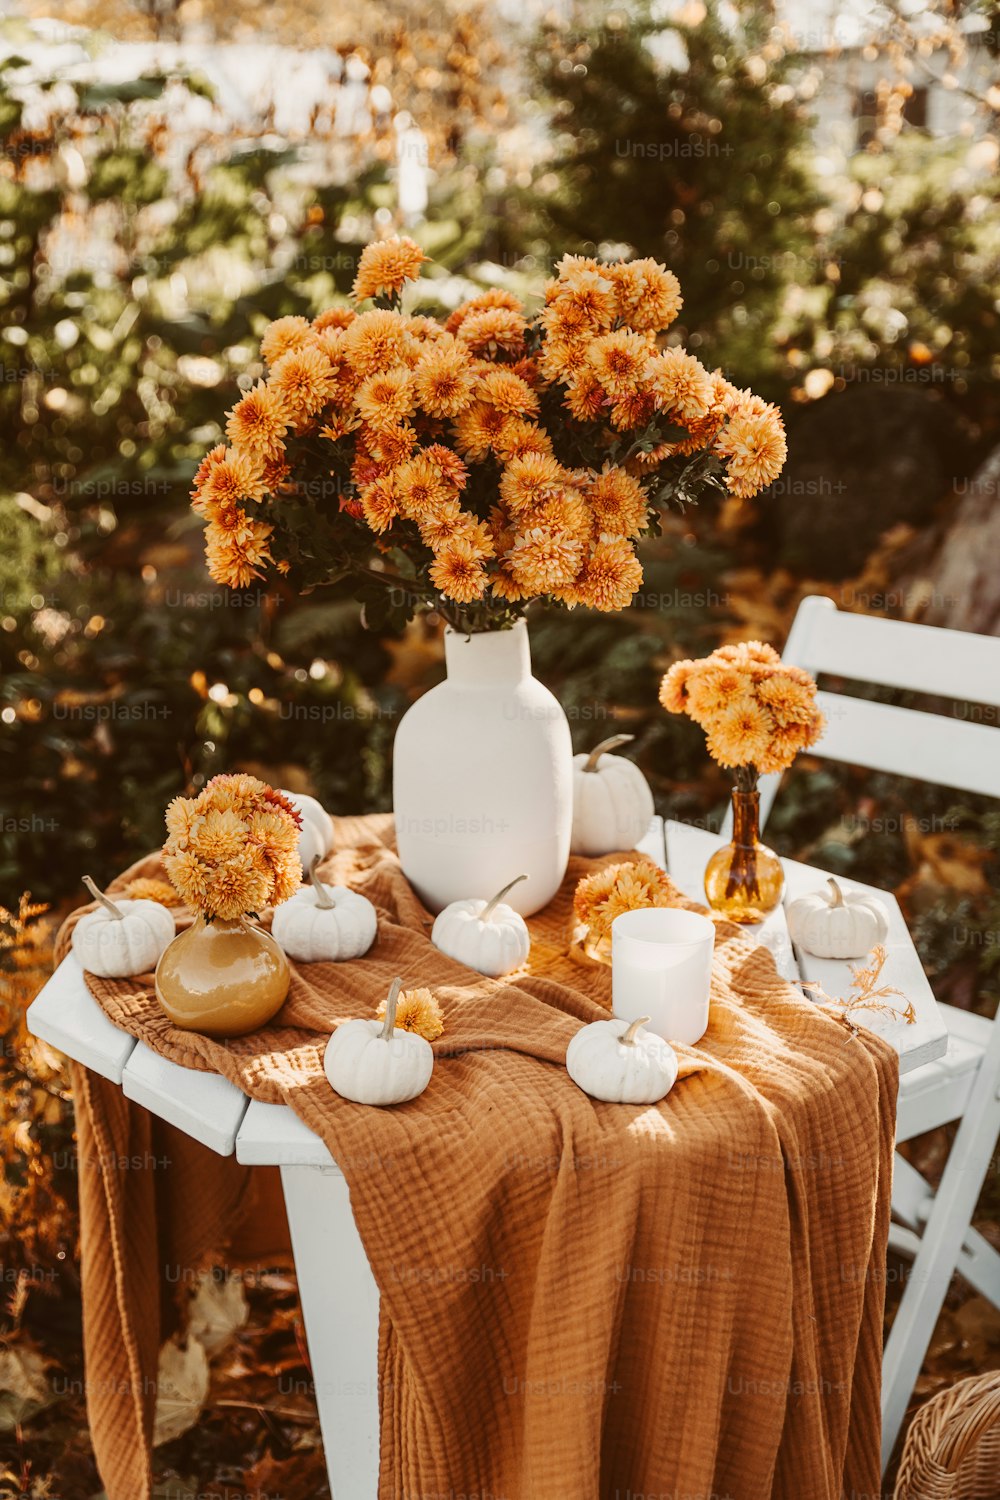 une table surmontée d’un vase blanc rempli de fleurs